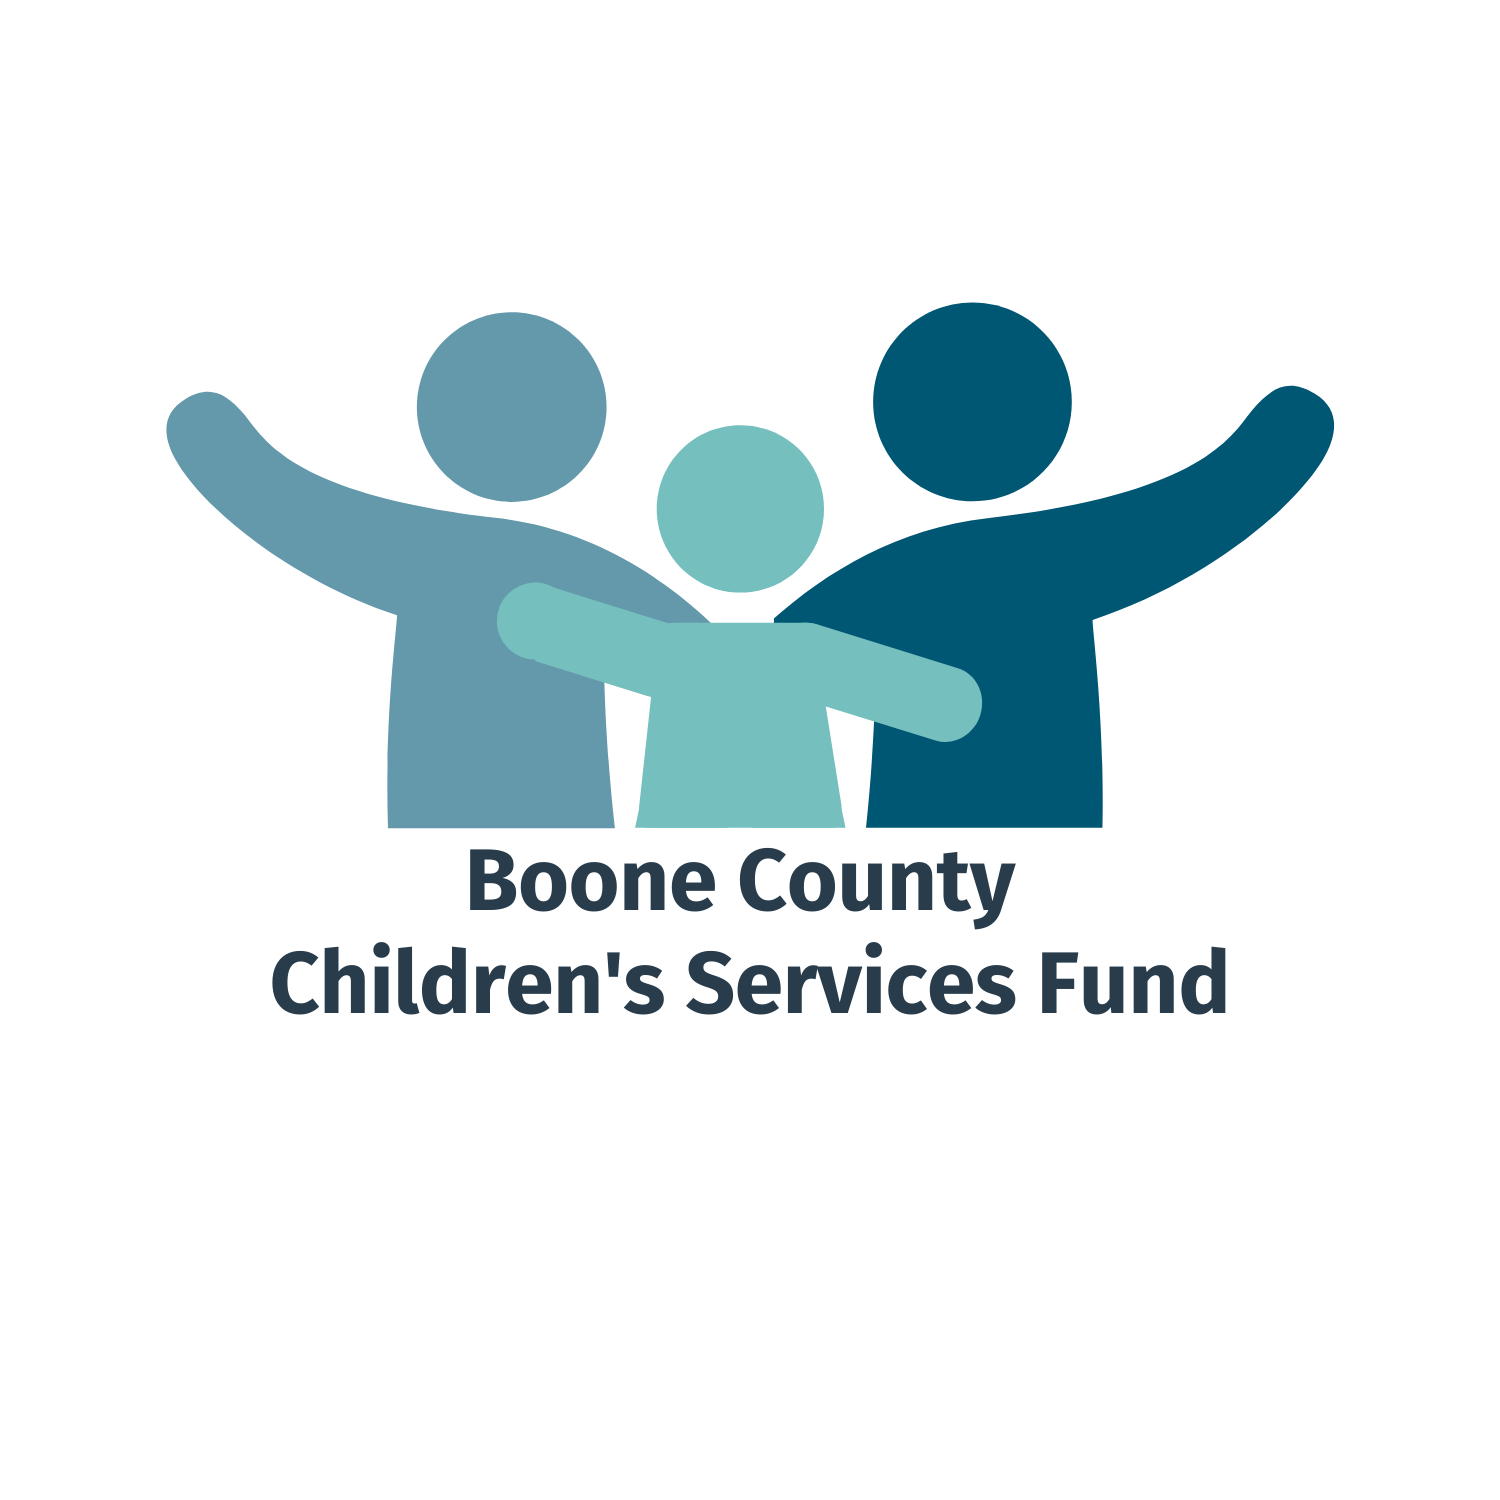 Boone County Children's Services Fund